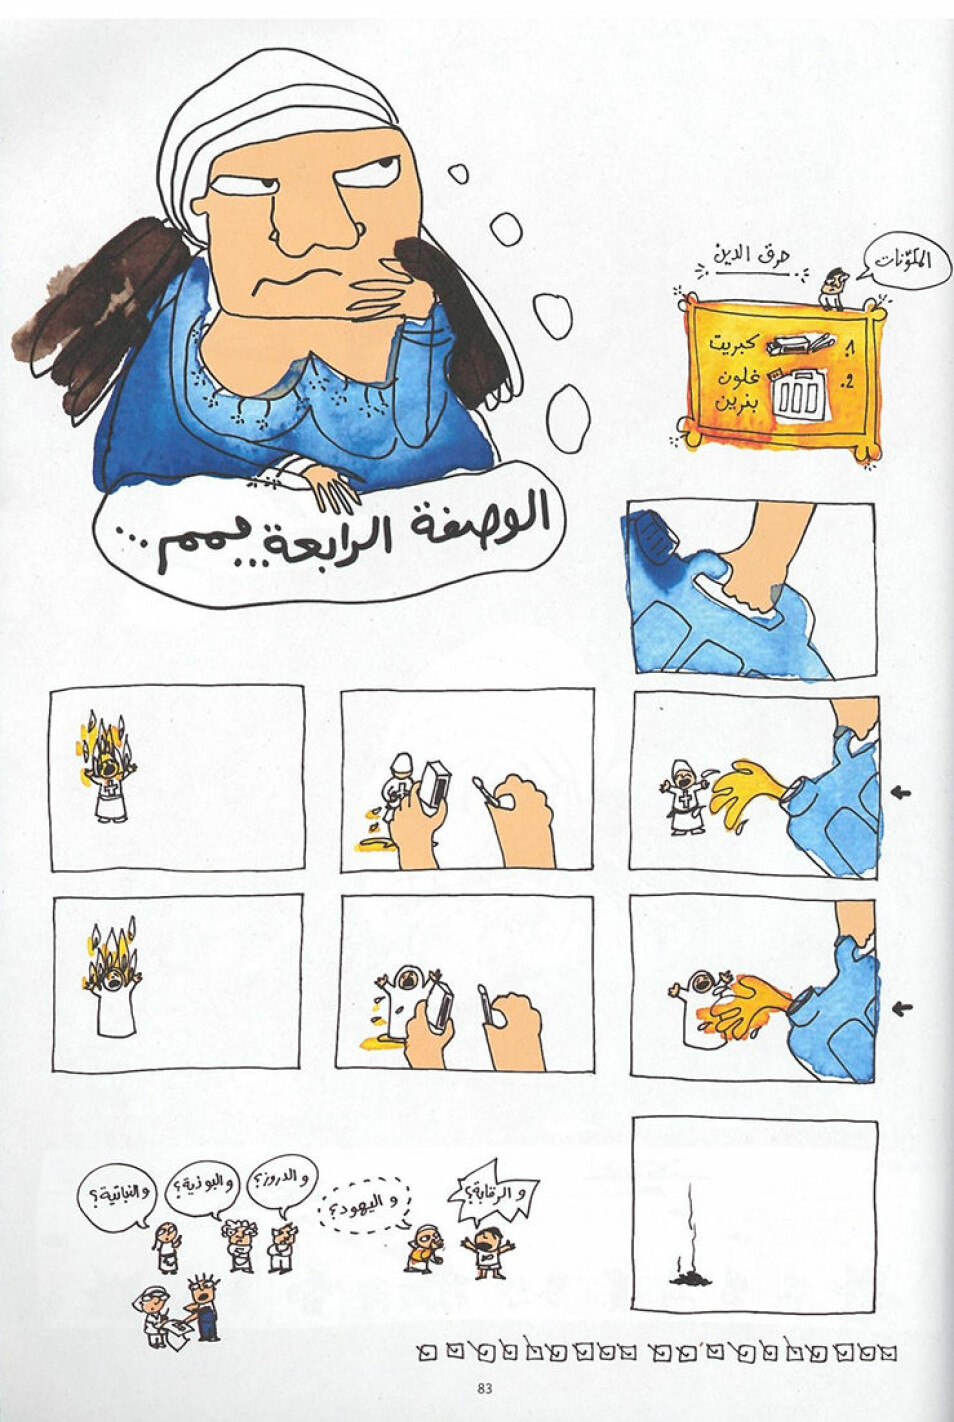 Uttrykket «Måtte religionen din brenne» er her tema i Lena Merhejs tegneserie «Libanesiske hevn-oppskrifter» (Samandal, nr 7, 2009). Tegningene er ment som en humoristisk tilnærming til det betente temaet religion og politikk i Libanon. Etter anklager om blasfemi, hatretorikk, falske nyheter og gudsbespottelse for denne og en side om homofili i samme utgave, ble magasinet i 2015 dømt til å betale en bot på 20 000 dollar.